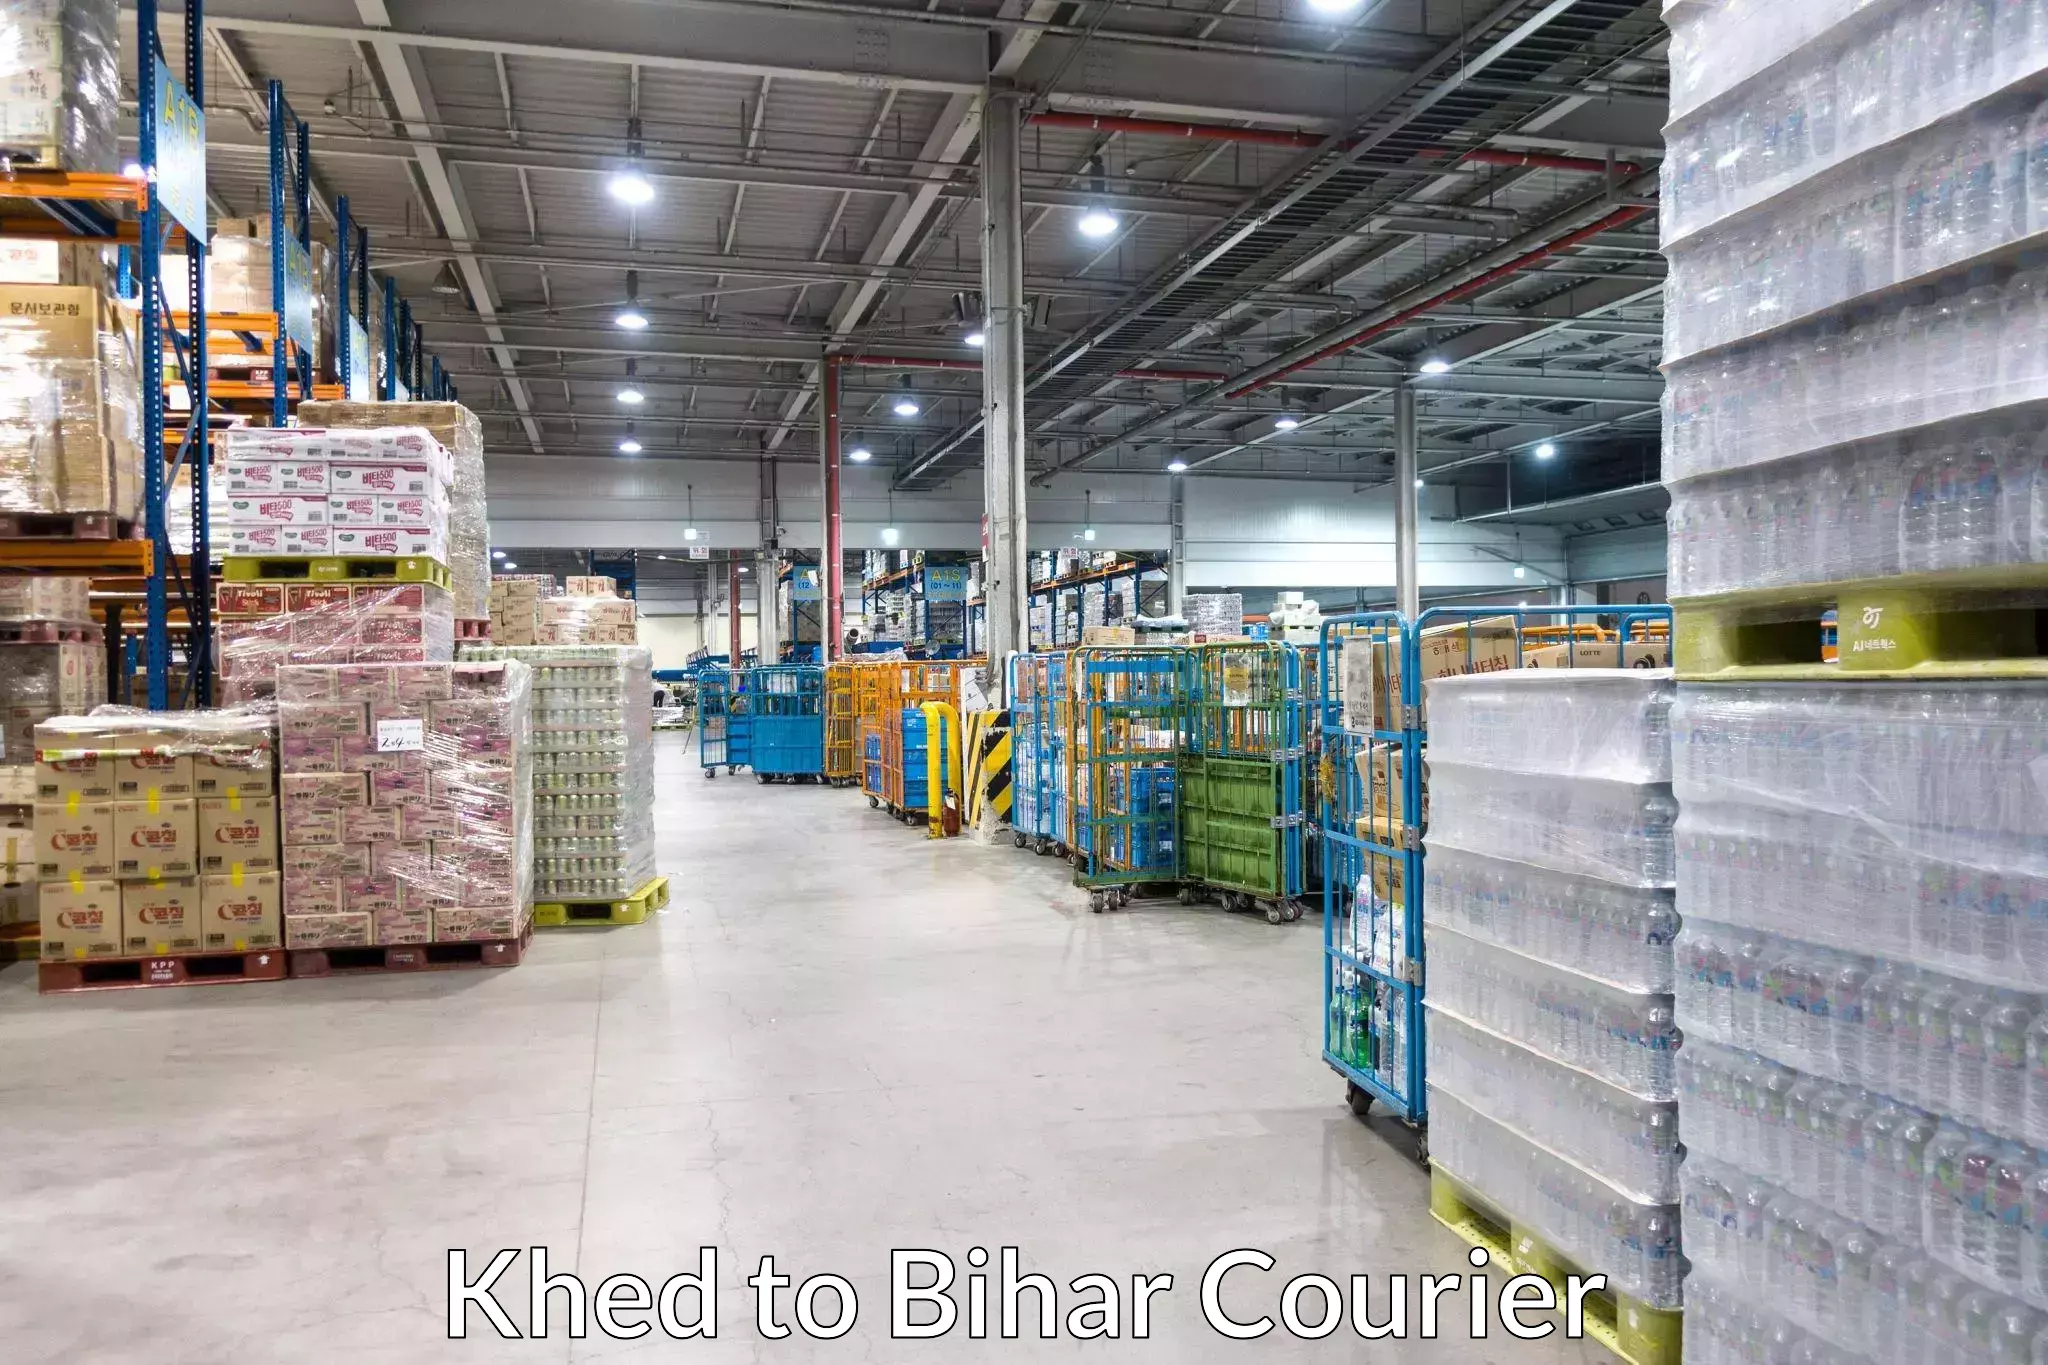 Professional parcel services Khed to Bikramganj